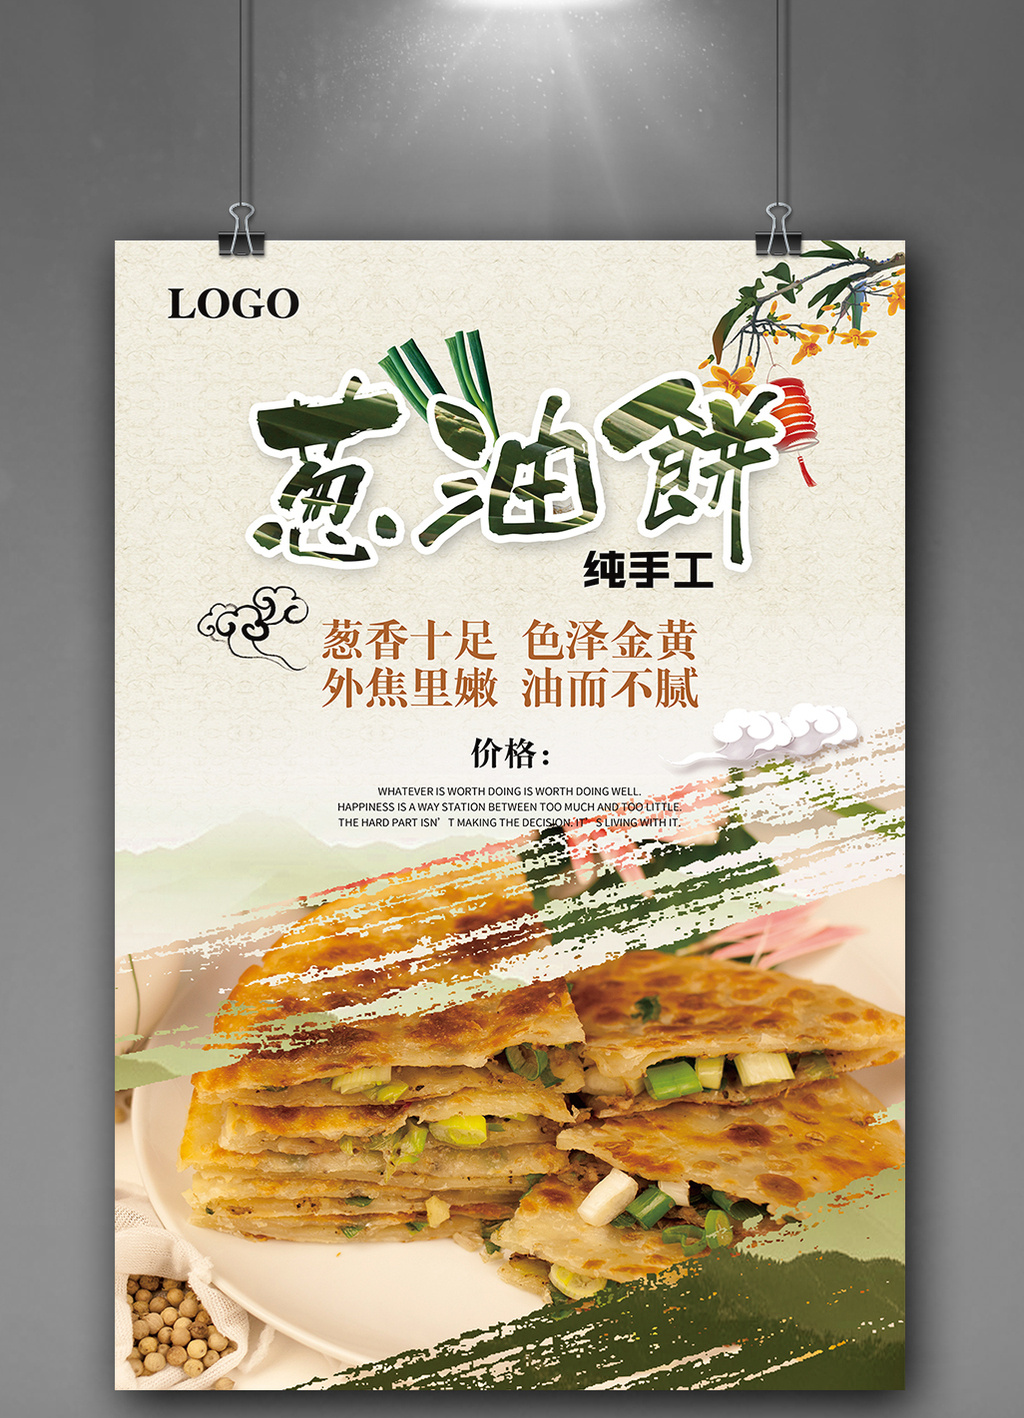 包图 广告设计 海报 > 中国风笔刷葱油饼促销餐饮海报  上传时间2017